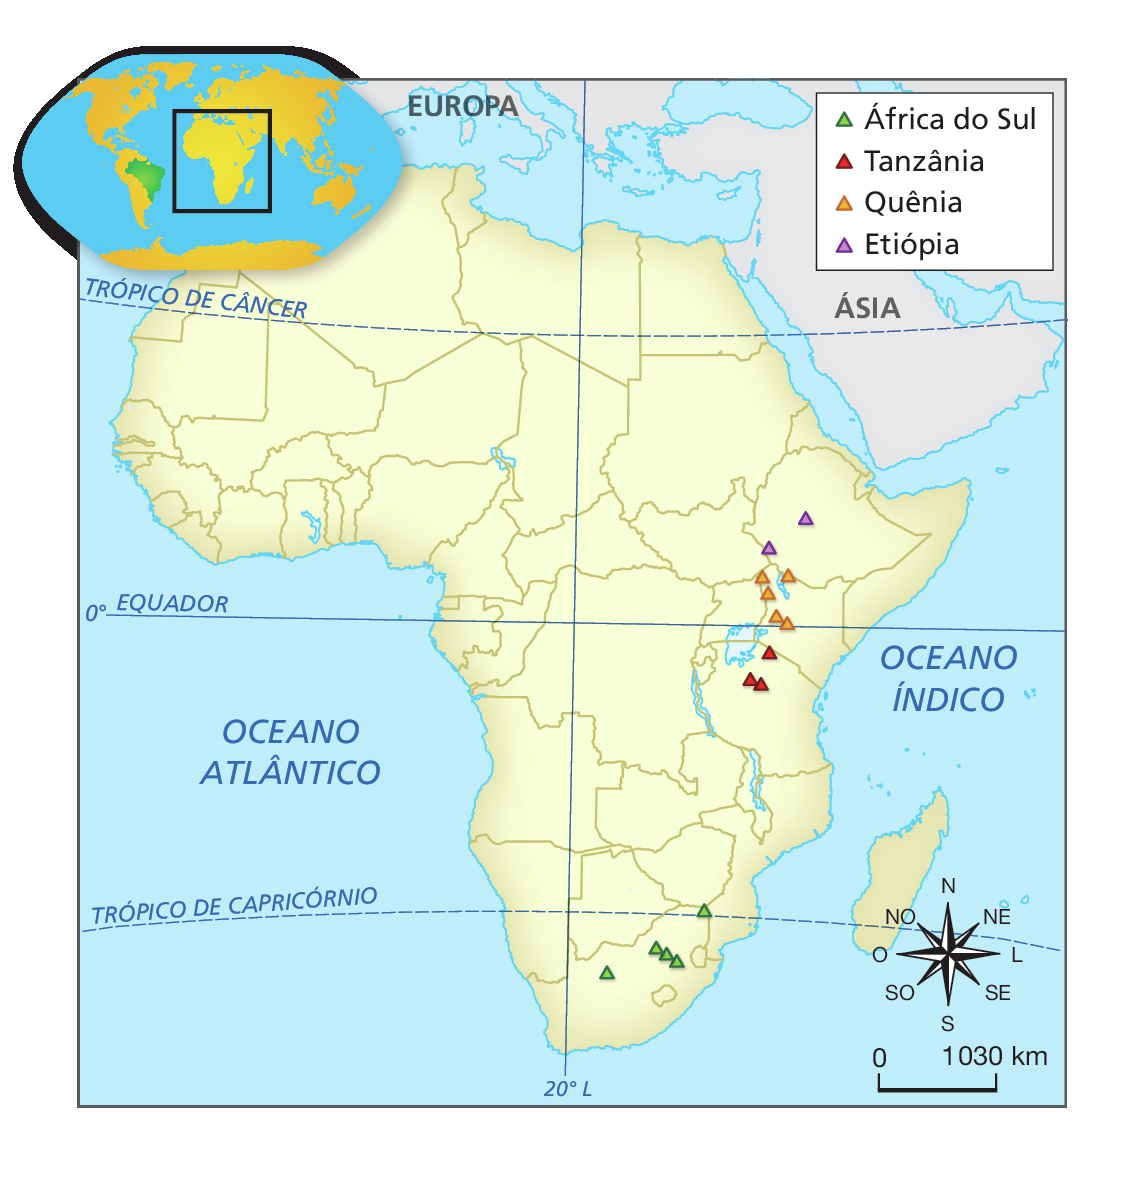 Mapa. África: vestígios dos primeiros seres humanos. Apresenta o continente africano.
Legenda: 
Triângulo verde: África do Sul.
Triângulo vermelho: Tanzânia.
Triângulo laranja: Quênia.
Triângulo roxo: Etiópia.
No mapa, ao sul, cinco triângulos estão localizados na África do Sul. A leste, três triângulos estão localizados na Tanzânia; cinco no Quênia; e dois na Etiópia. No canto inferior direito, a rosa dos ventos e a escala de 0 a 1.030 quilômetros.